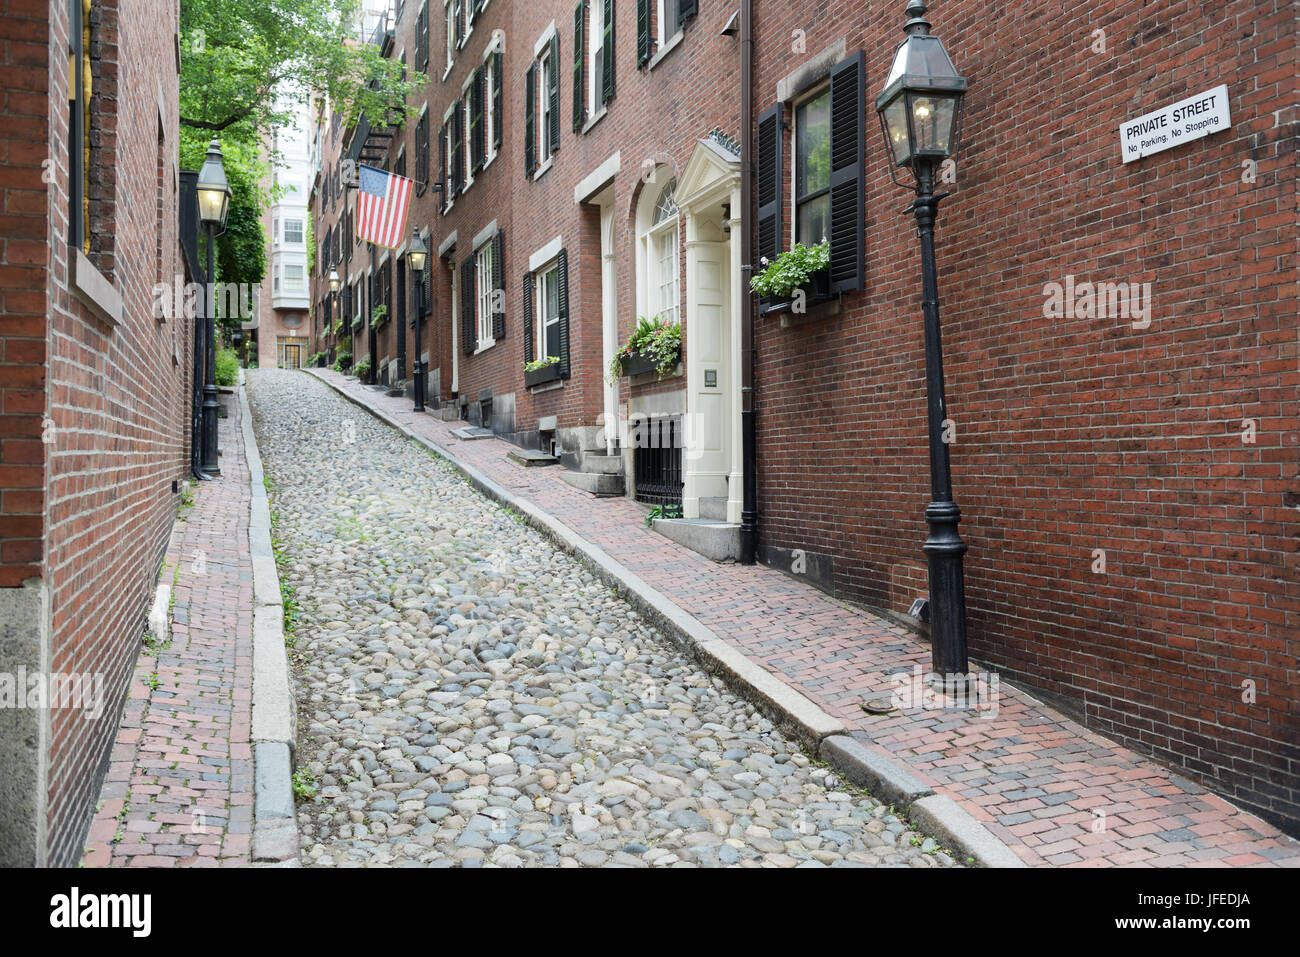 Historic Acorn Street, Beacon Hill neighborhood of Boston, MA Stock Photo